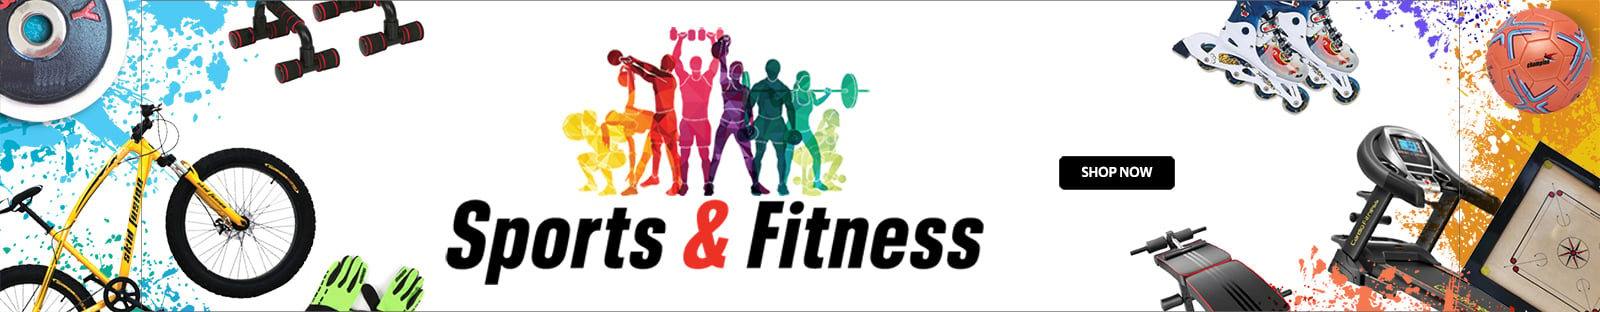 Sports-Fitness-Banner-New.jpg